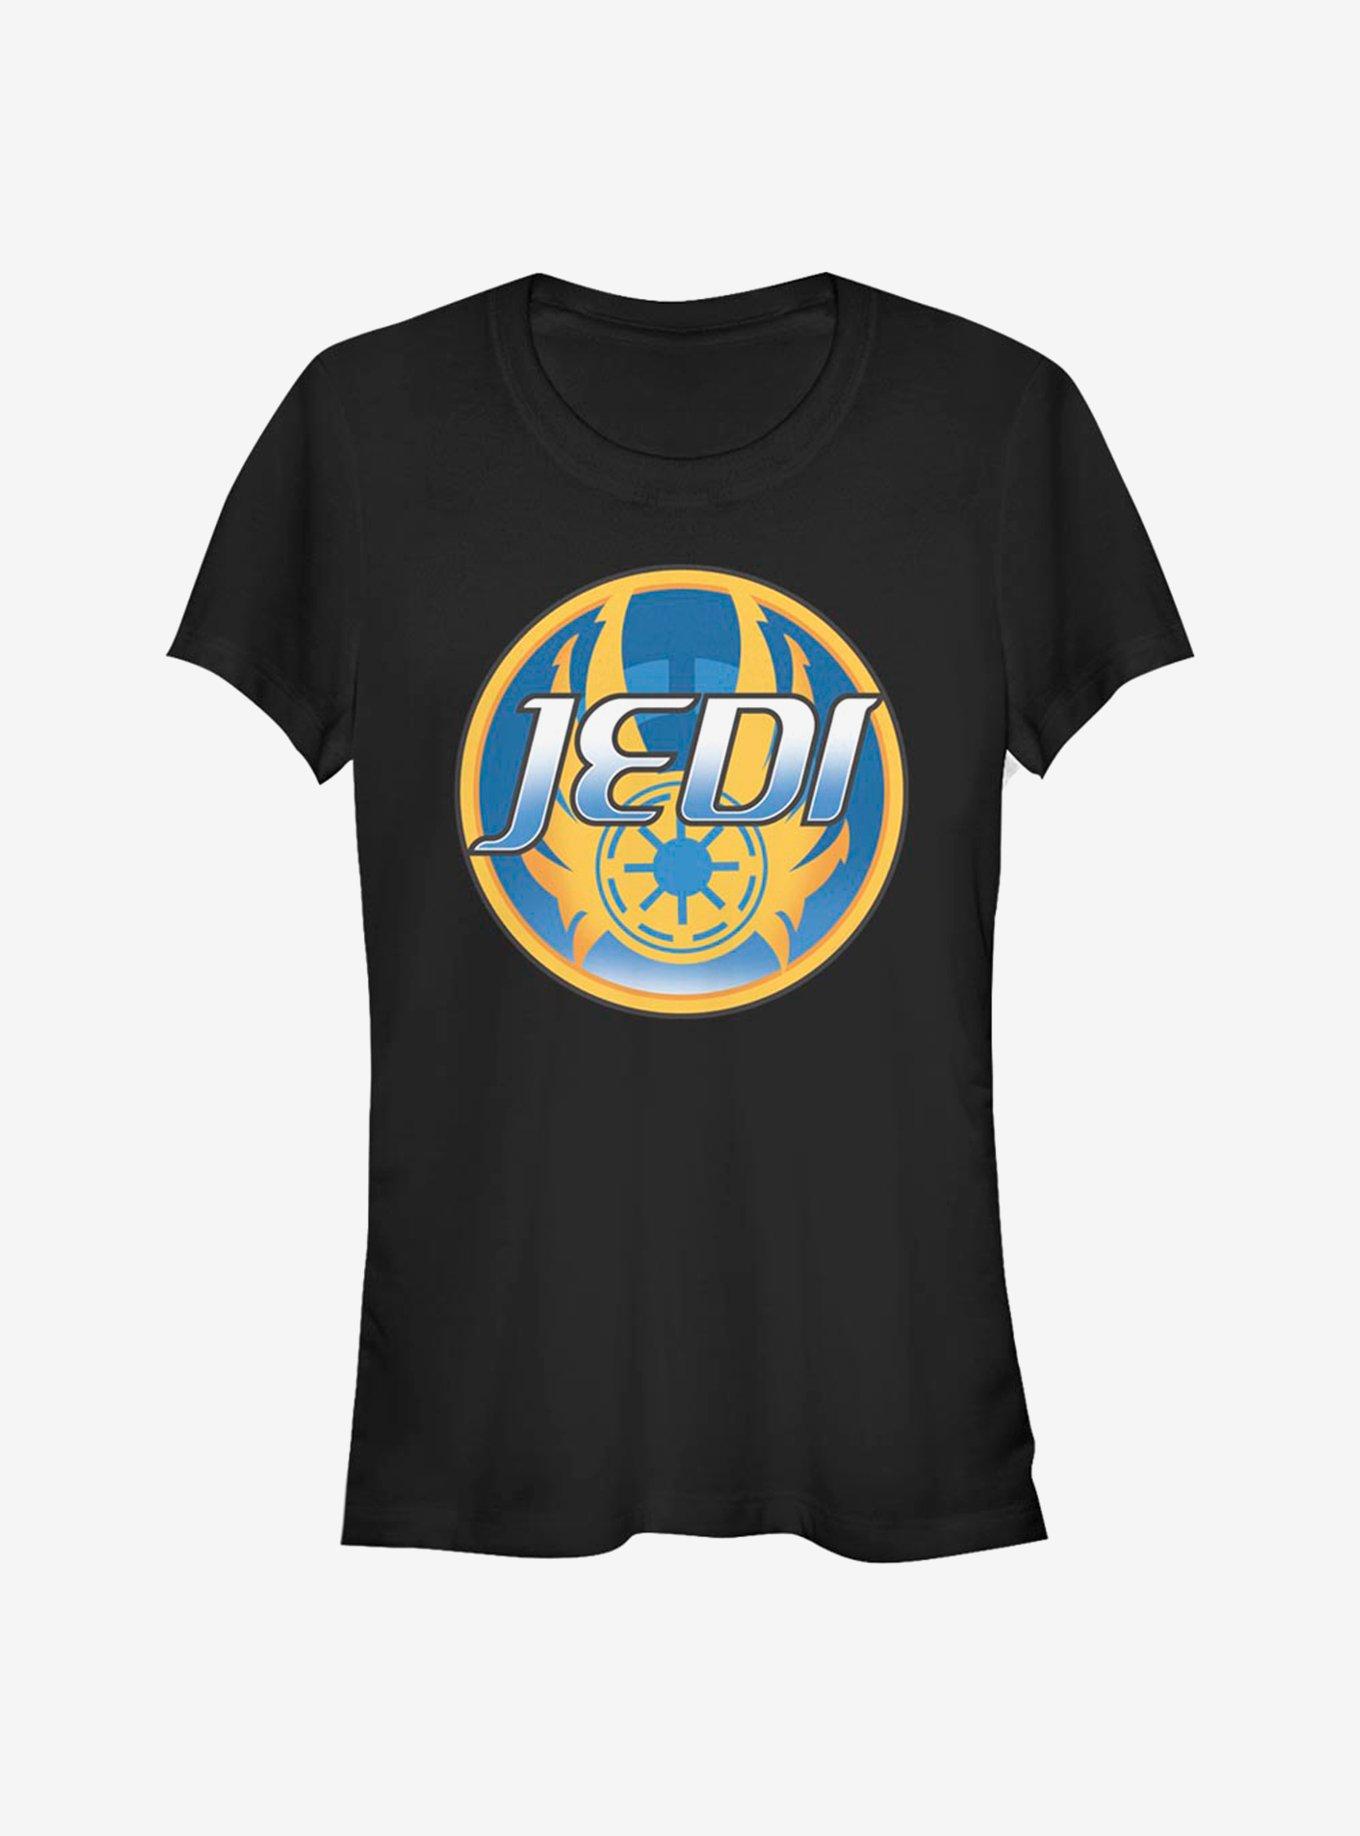 Star Wars Jedi Circular Girls T-Shirt